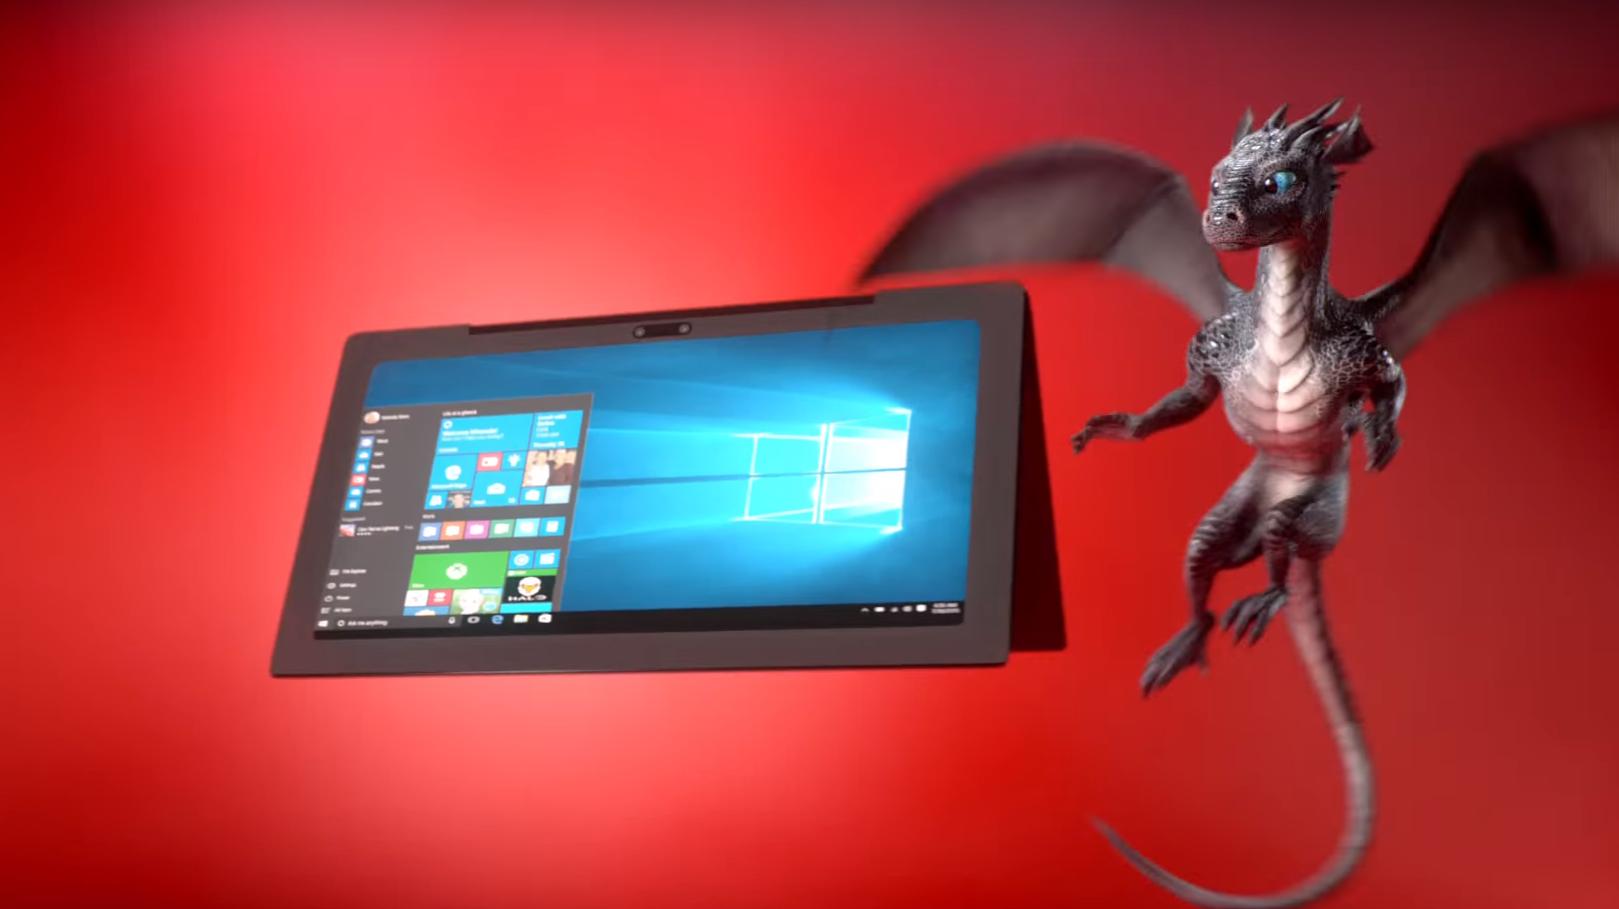 Snart dukker Snapdragon 835 opp i Windows 10-PC-er